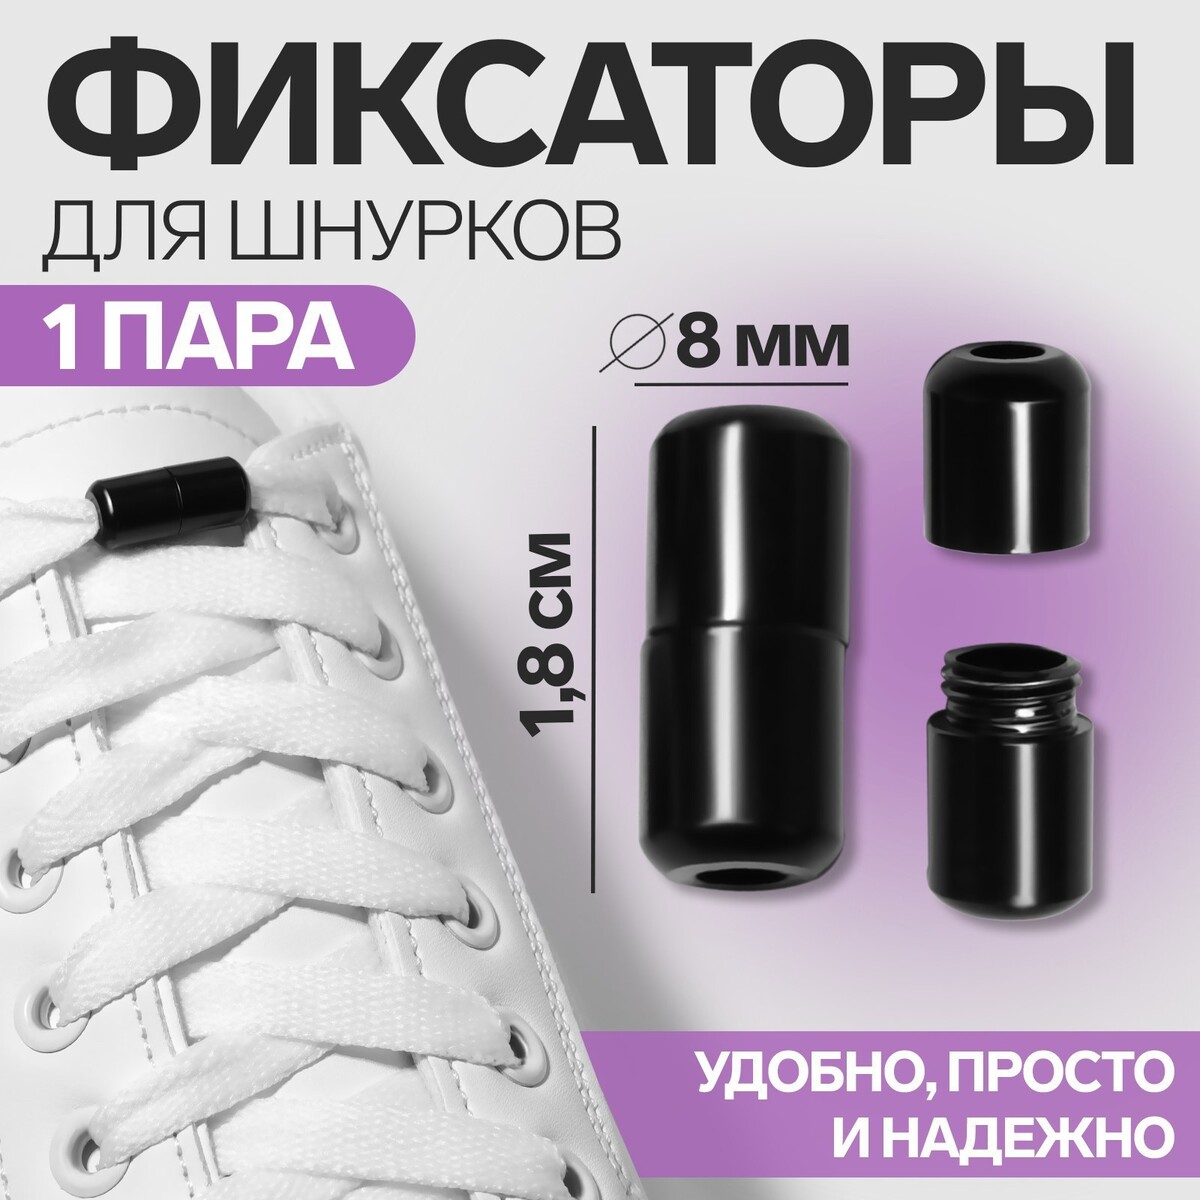 Фиксатор для шнурков, пара, d = 8 мм, 1,8 см, цвет черный фиксатор для шнурков пара d 8 мм 1 8 см